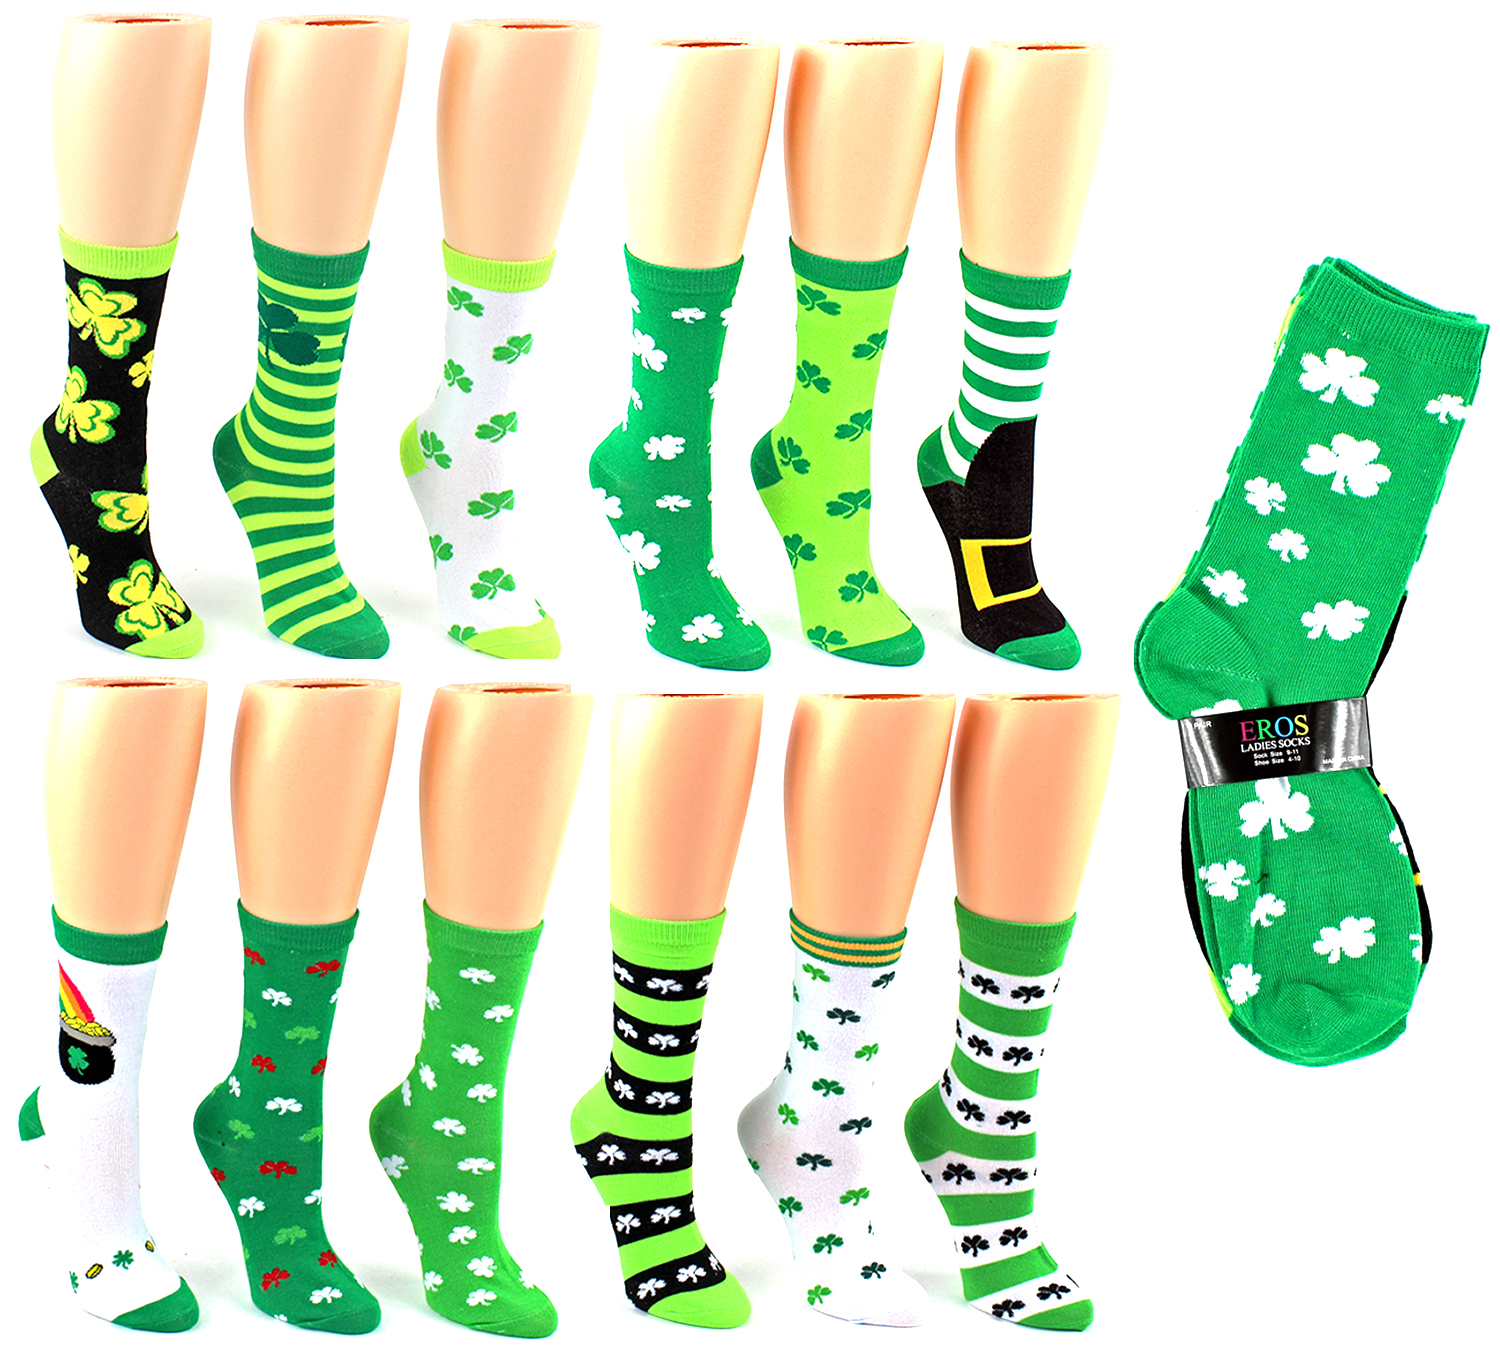 Women's Novelty Crew Socks - St. Patrick's Day Prints - Size 9-11